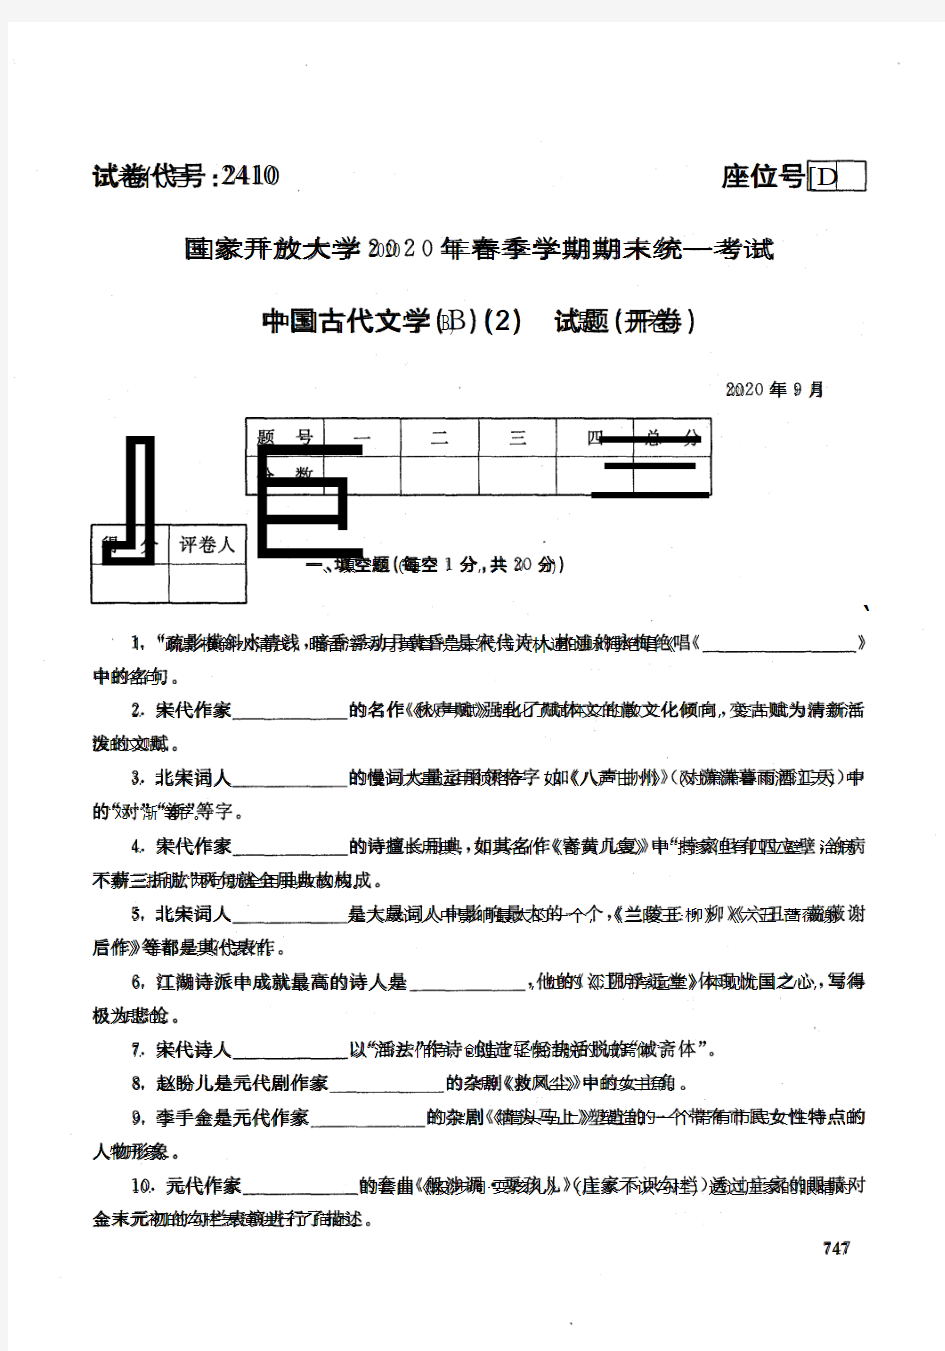 中国古代文学(B) (2) -202009国家开放大学2020年春季学期期末统一考试试题及答案